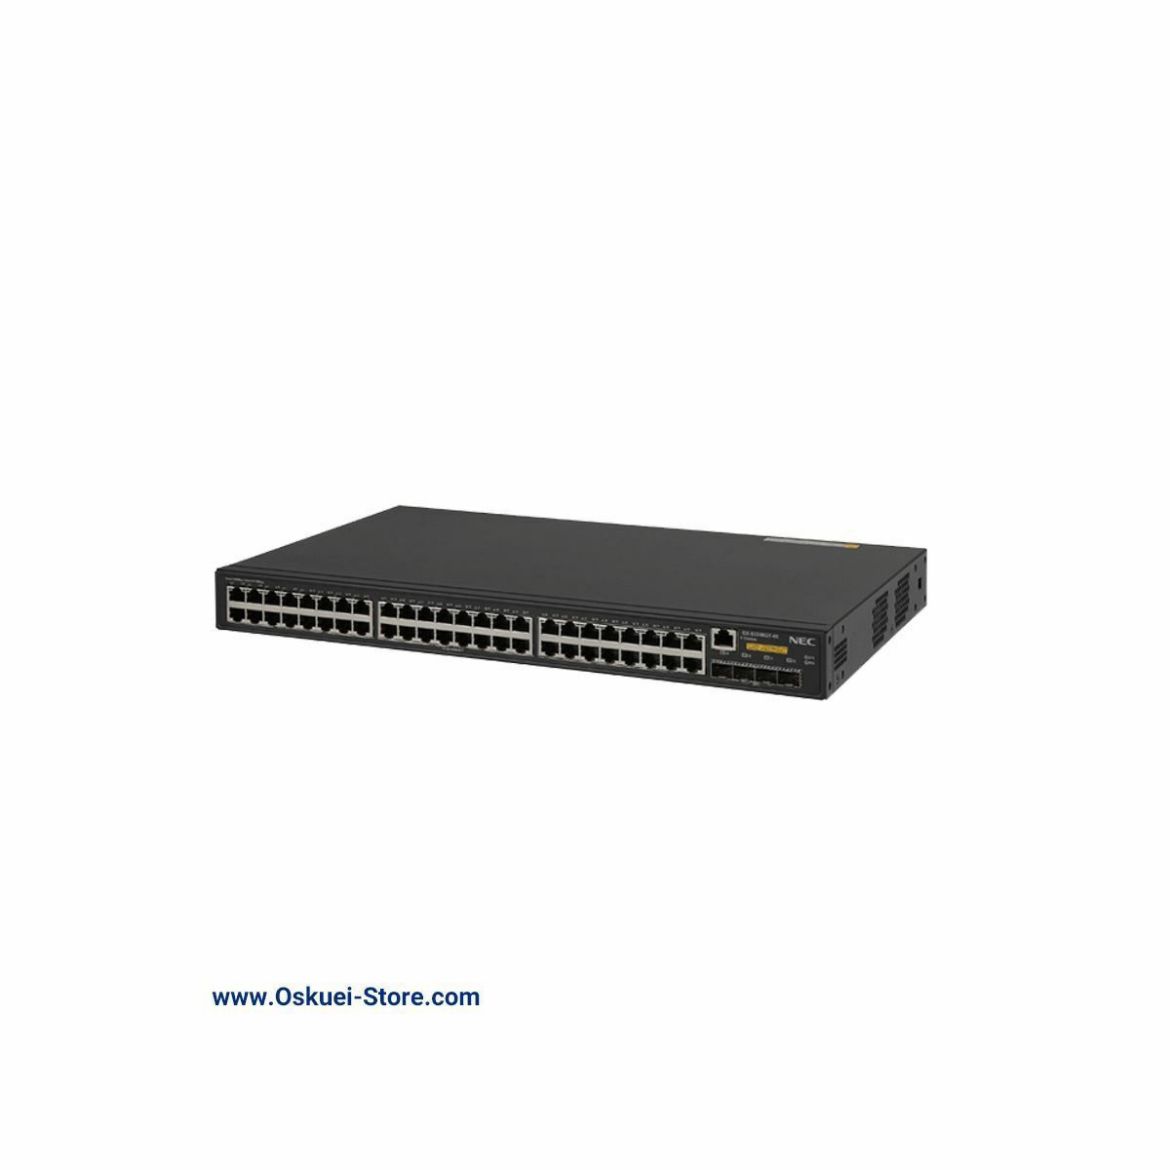 NEC S5248GT-4X-PW Network Switch